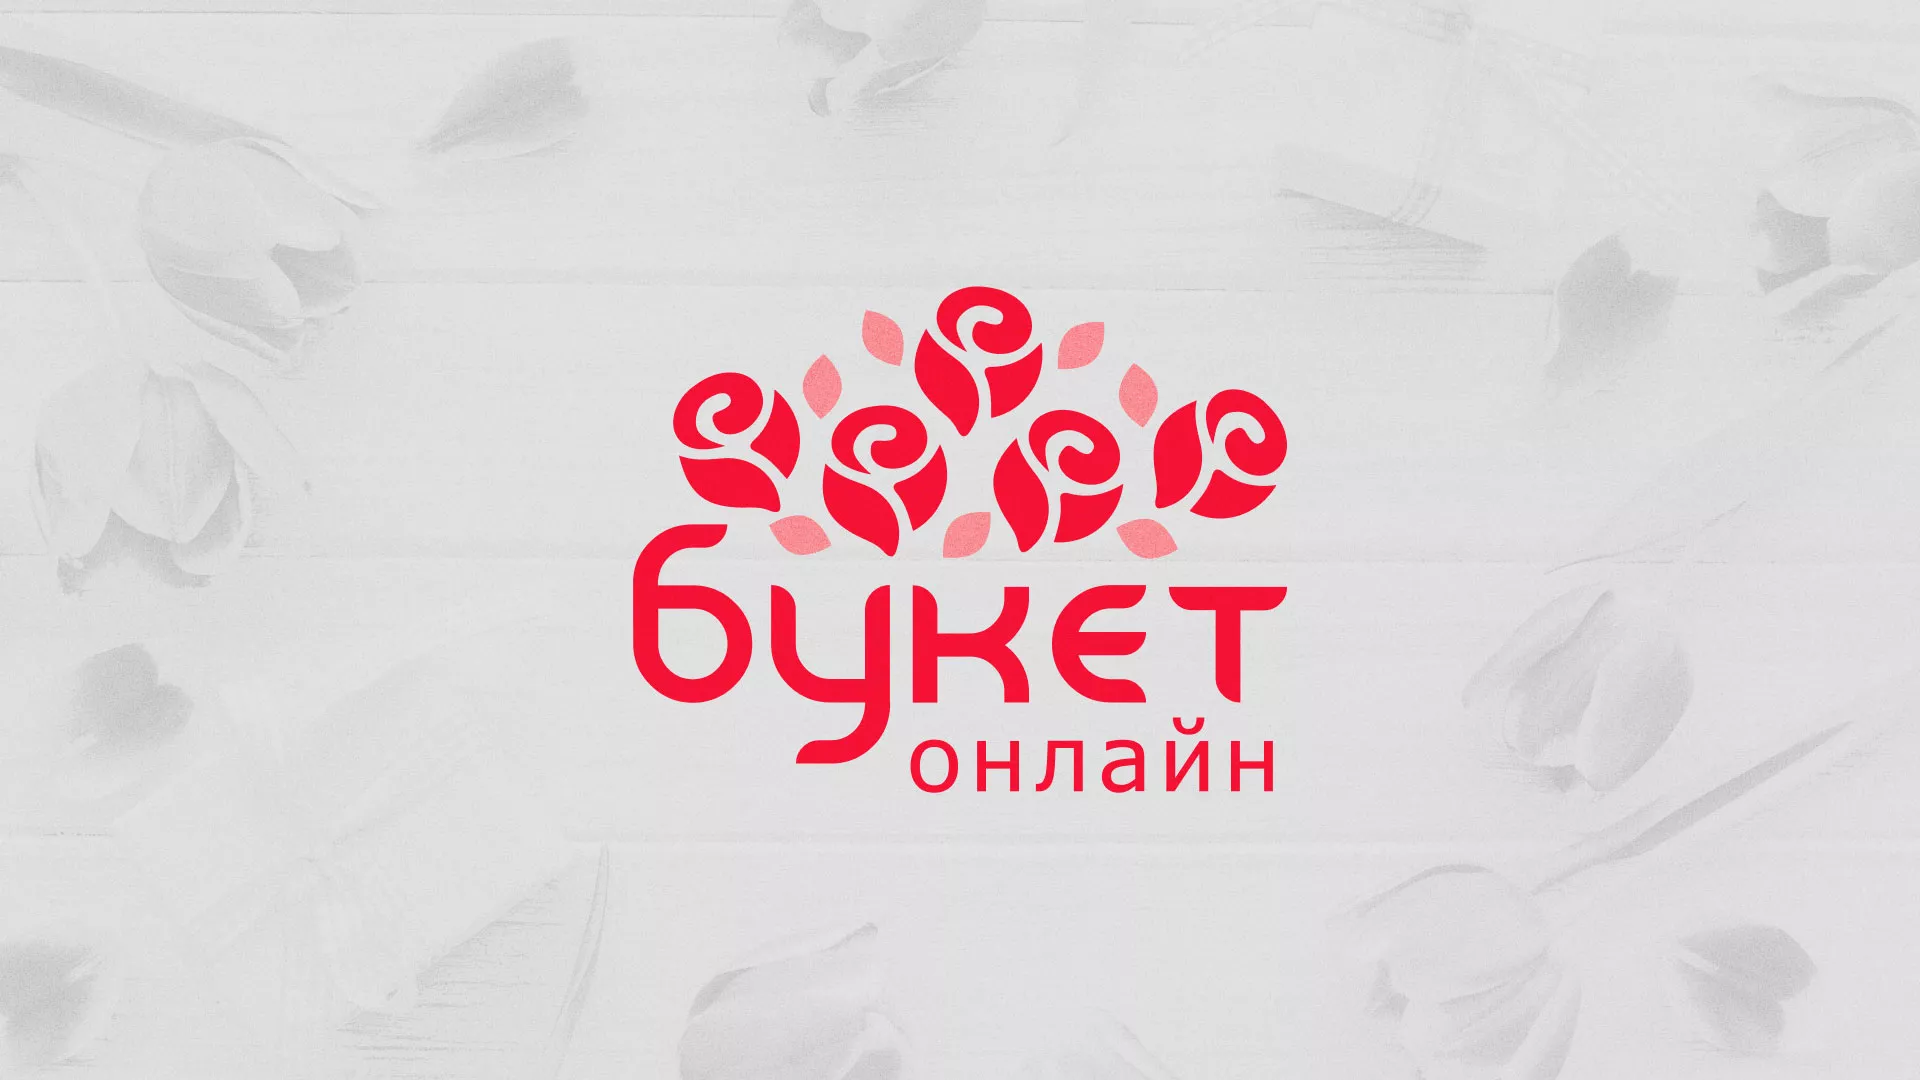 Создание интернет-магазина «Букет-онлайн» по цветам в Змеиногорске